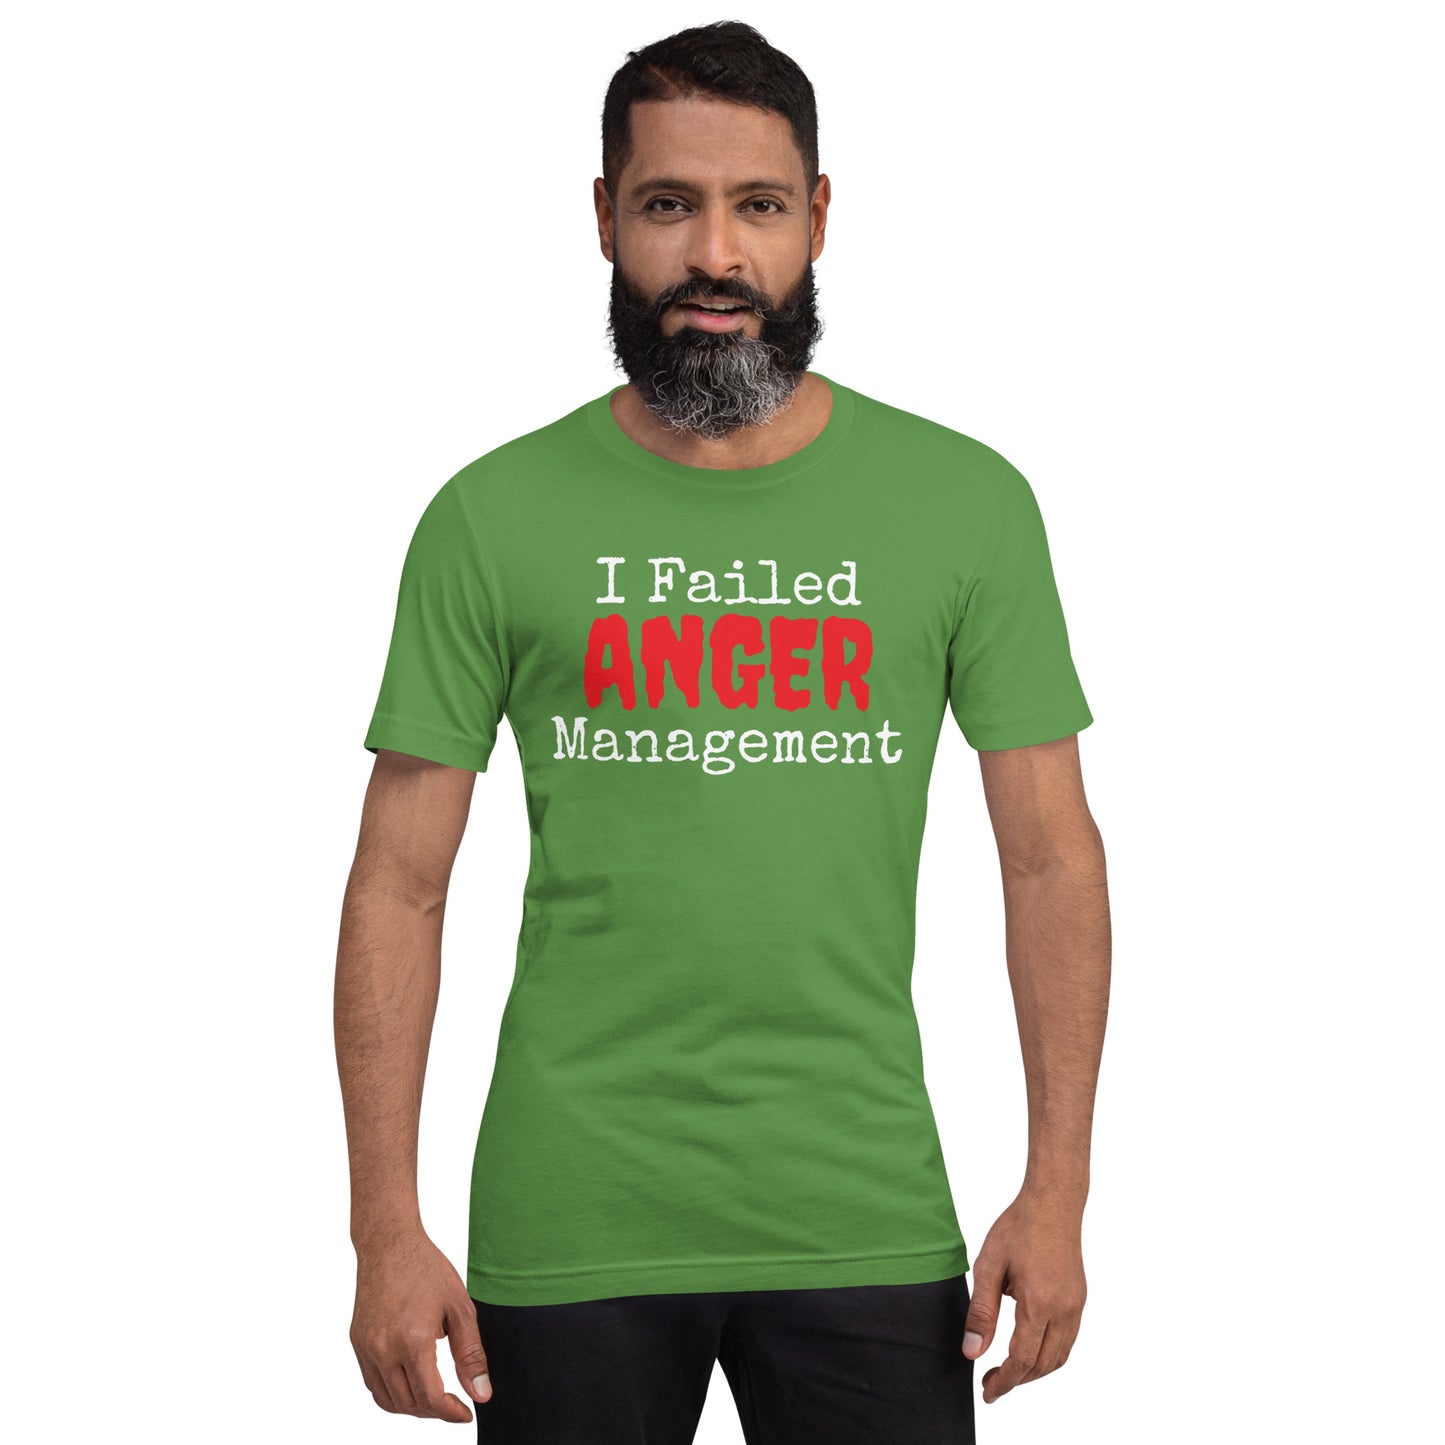 I Failed Anger Management Unisex t-shirt